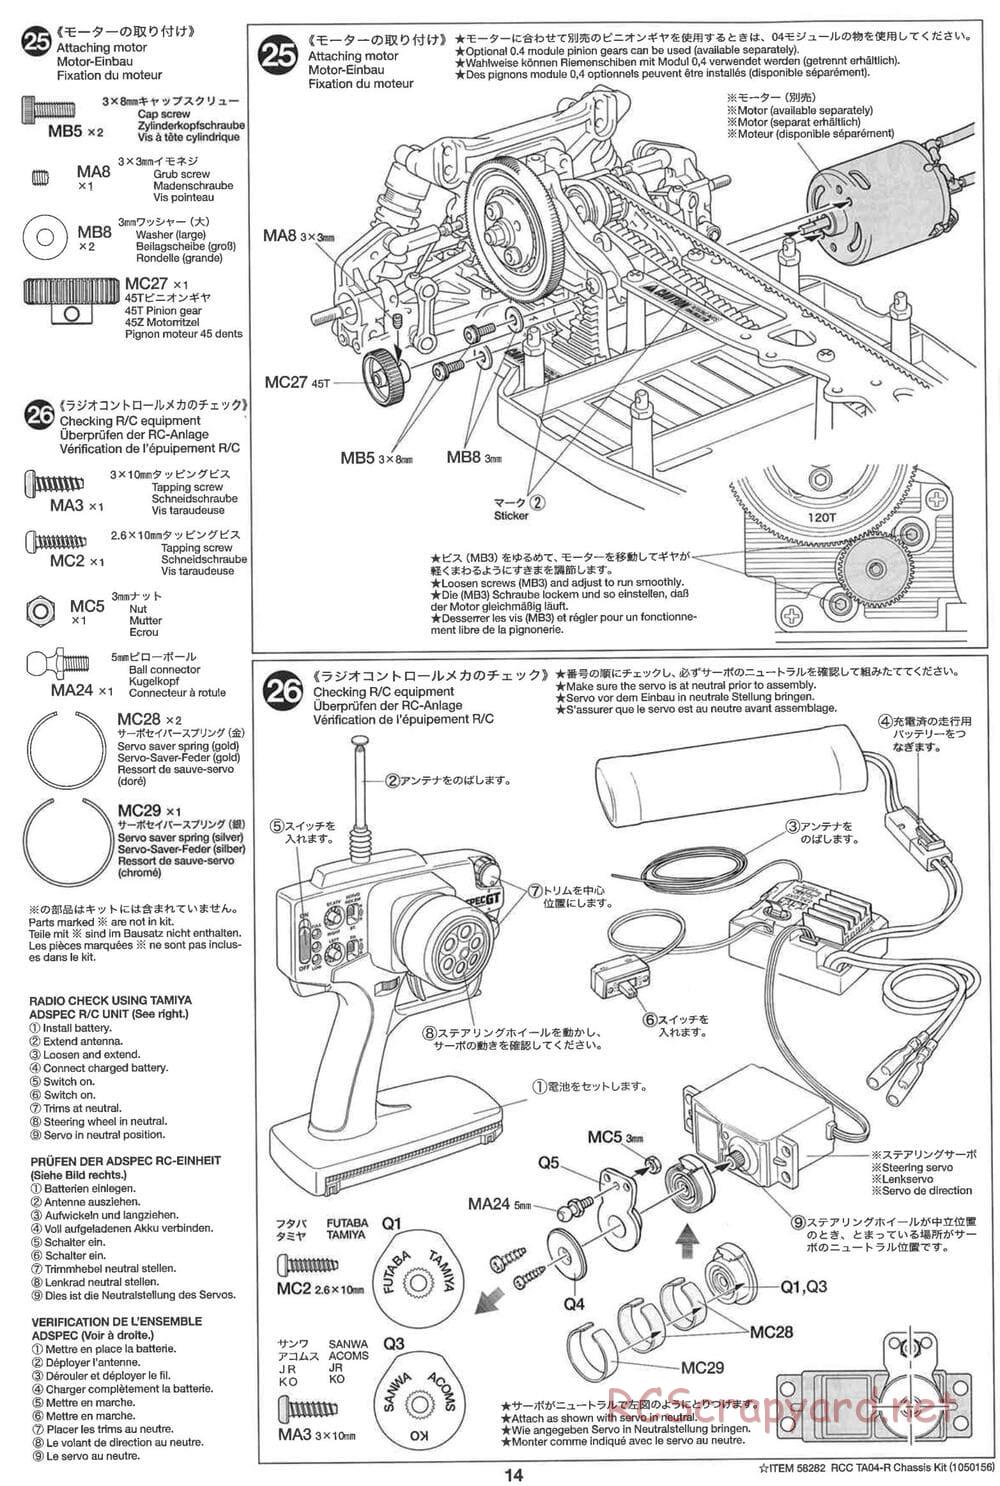 Tamiya - TA-04R Chassis - Manual - Page 14